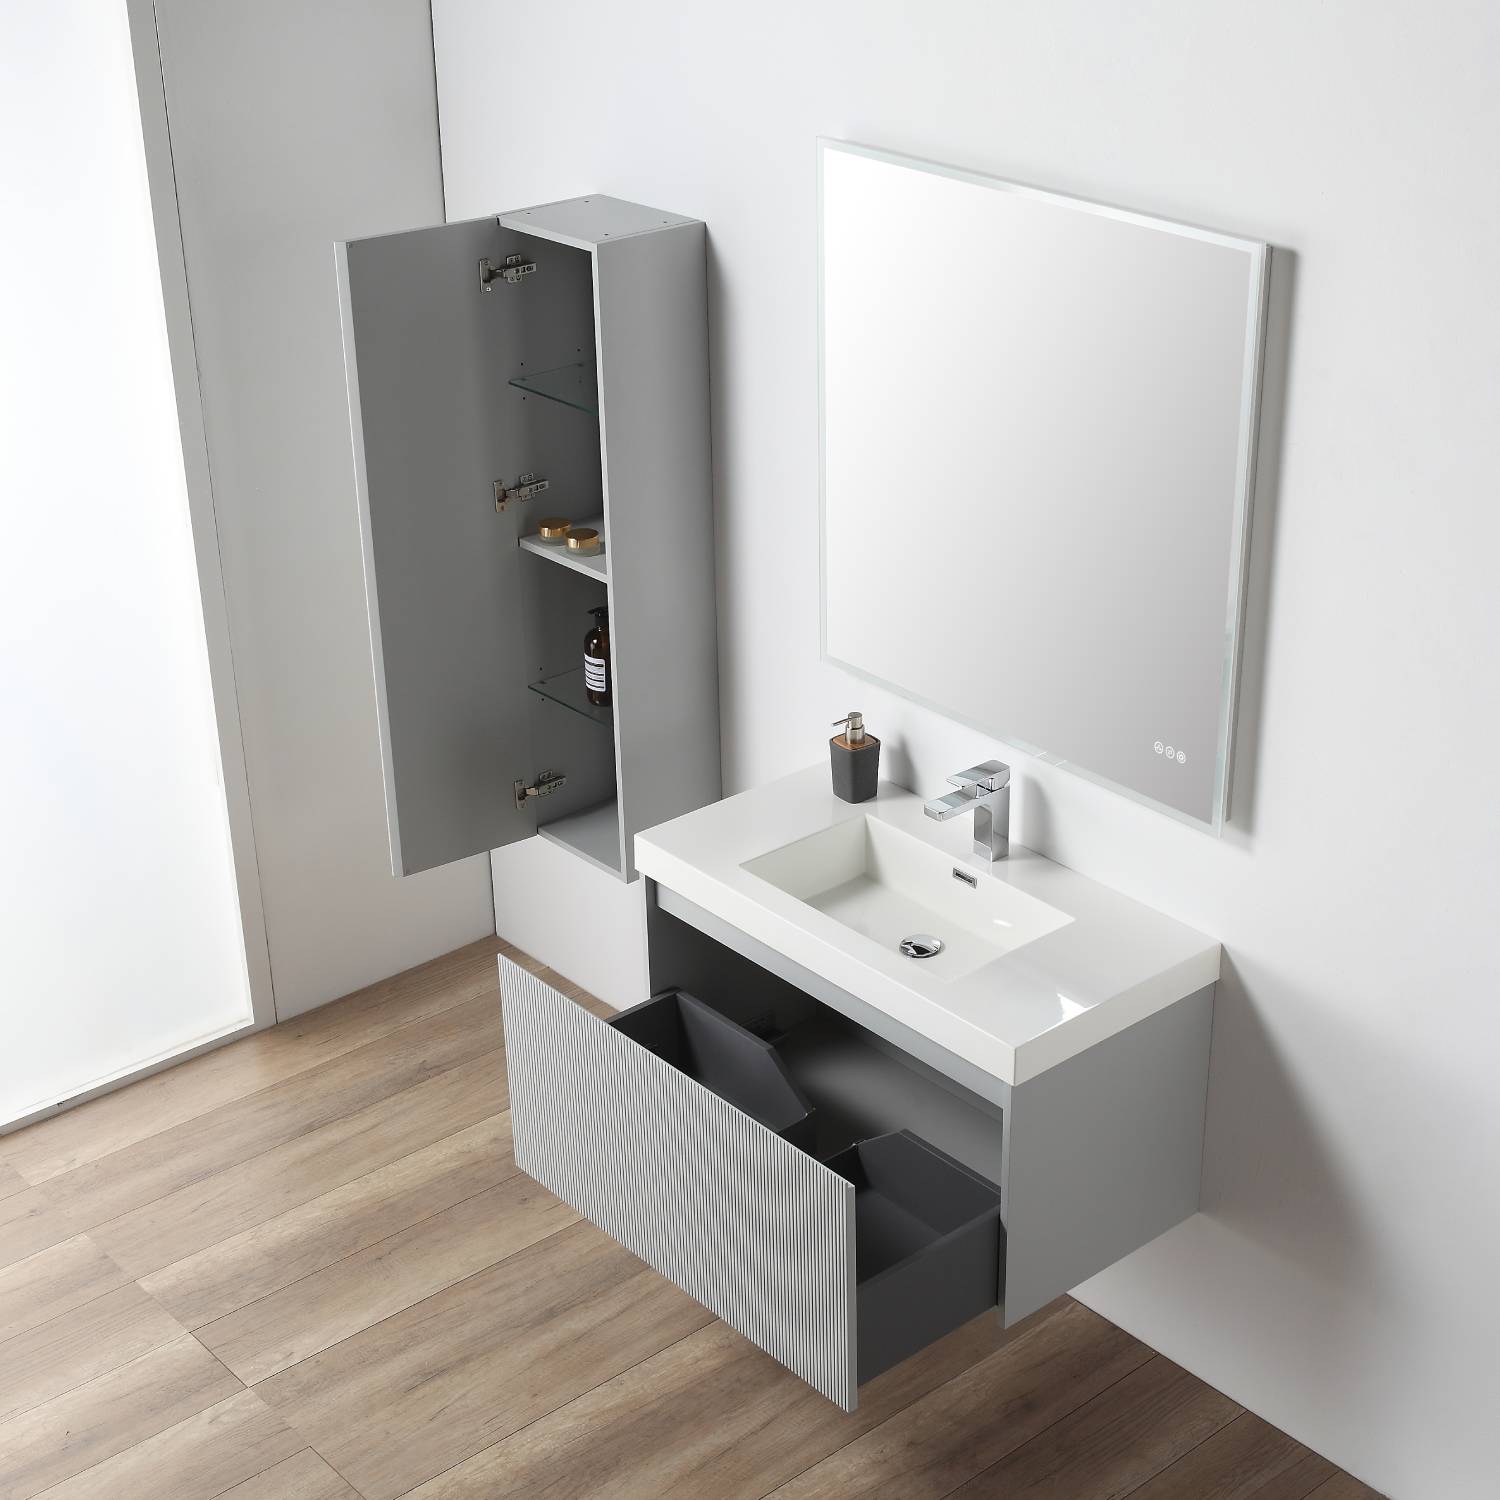 Positano 36" Bathroom Vanity  #size_36"  #color_light grey